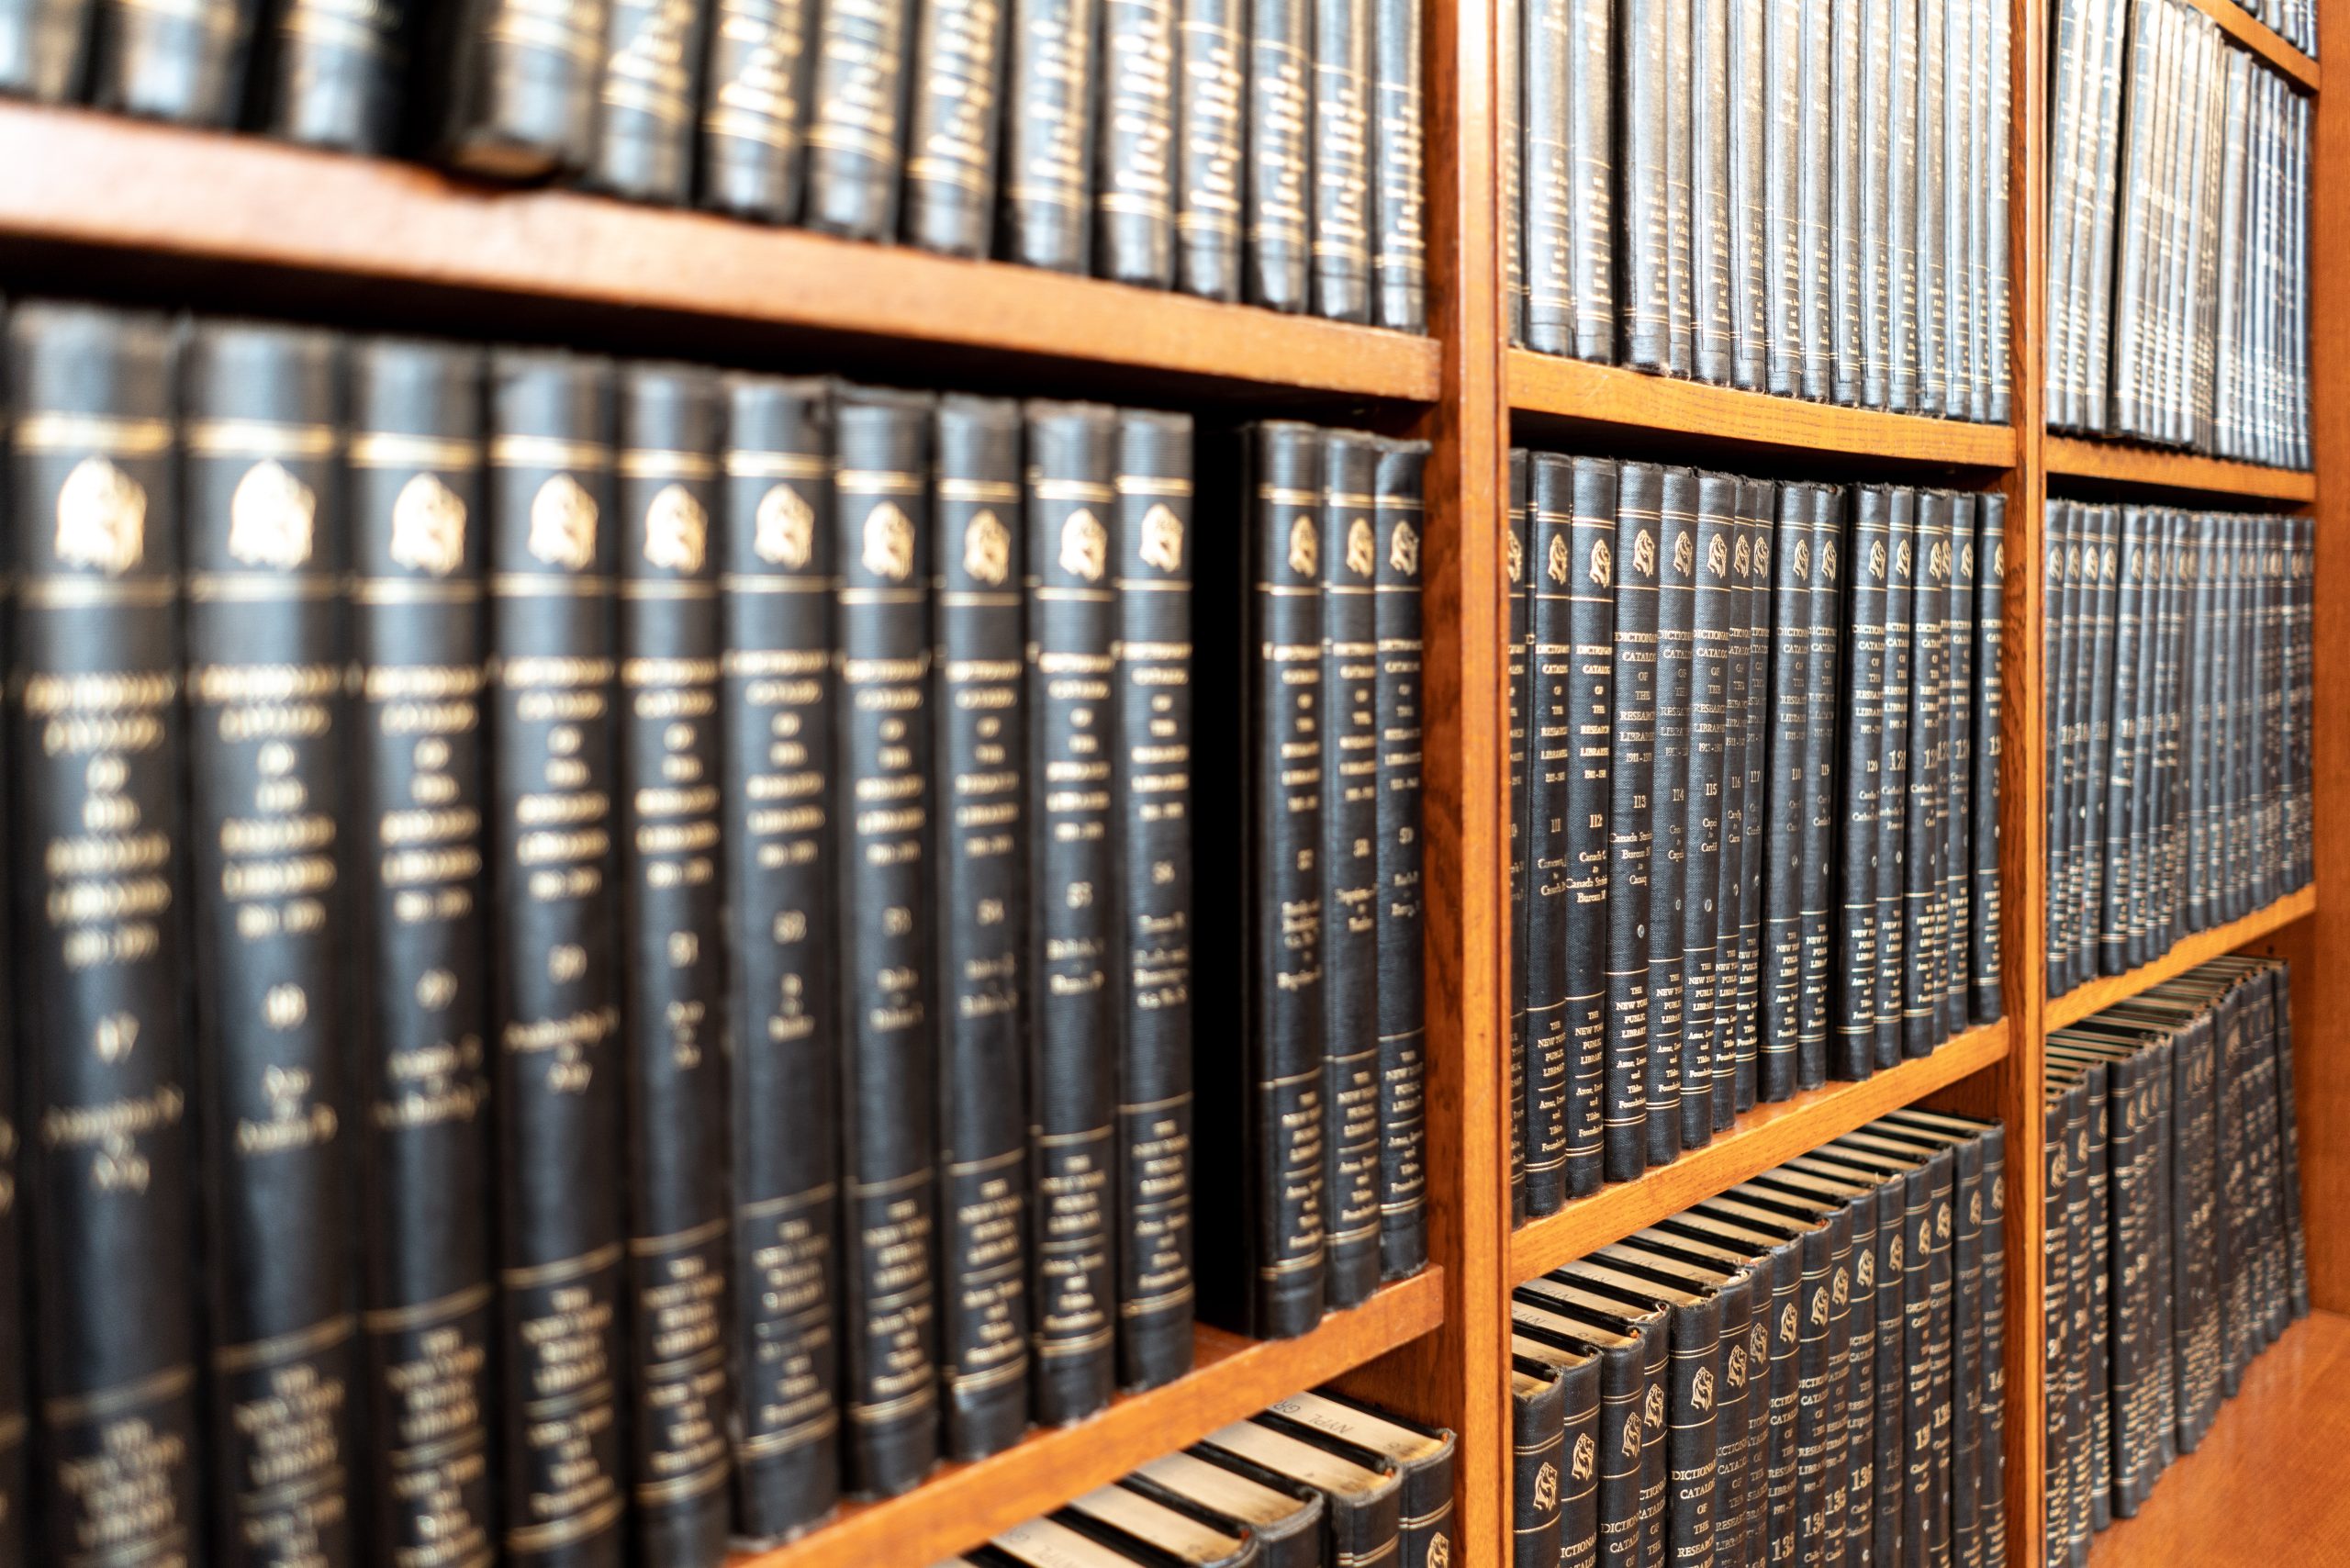 Law books stacked on bookshelves